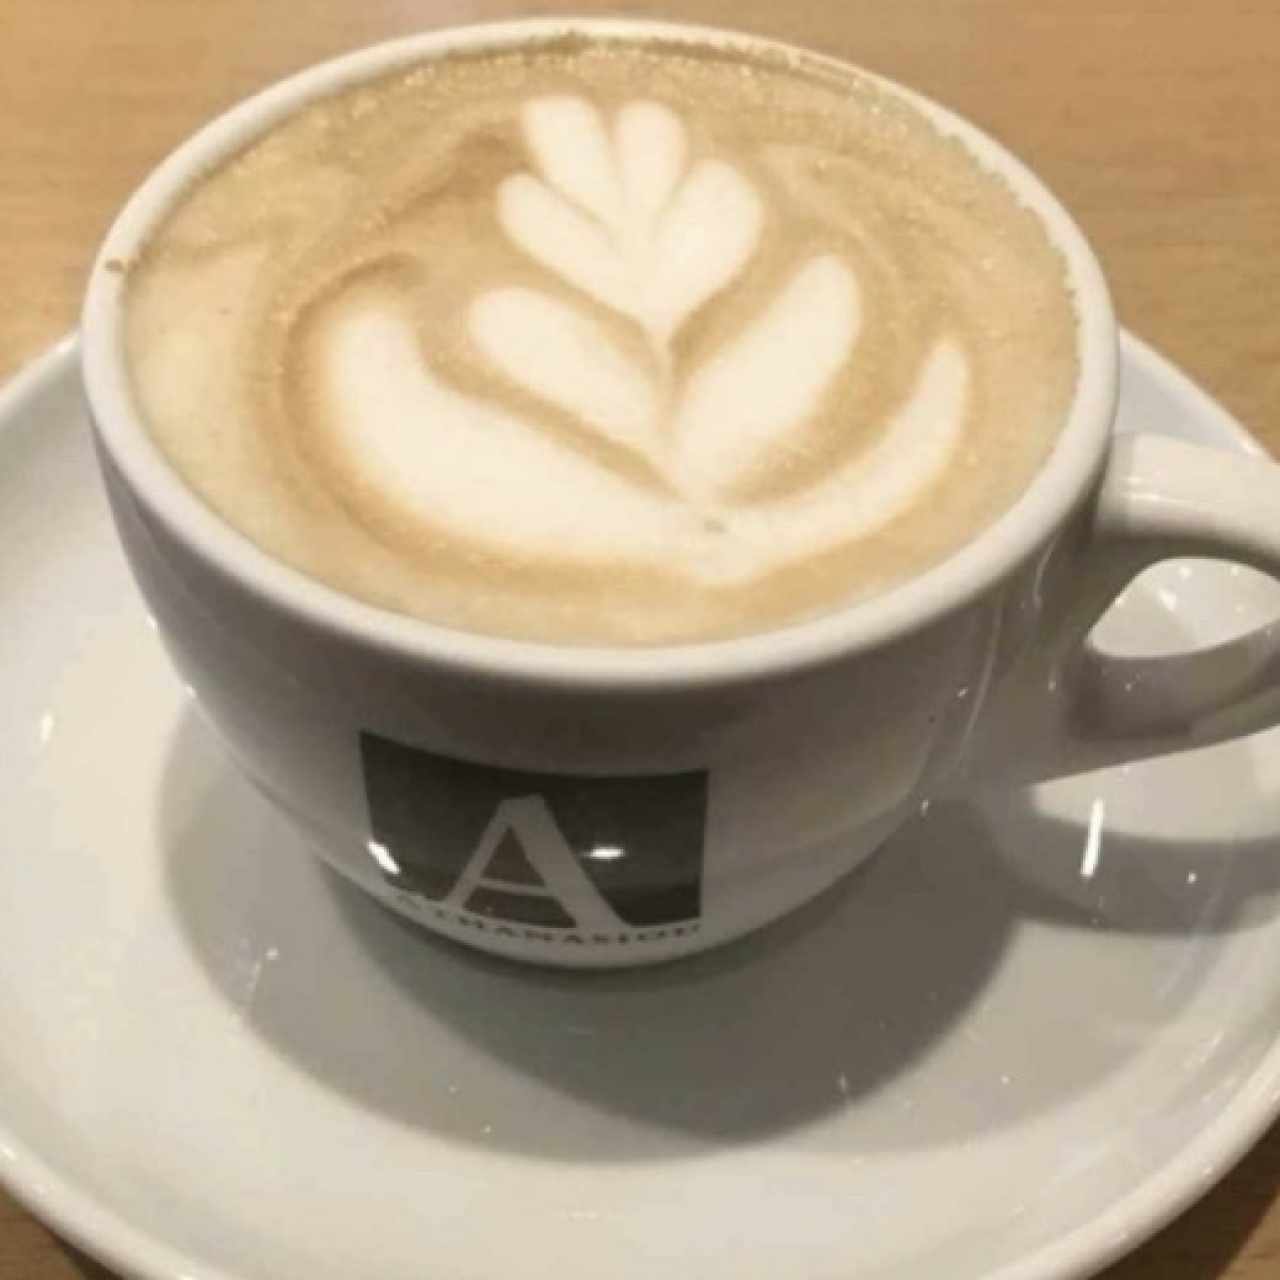 Café late